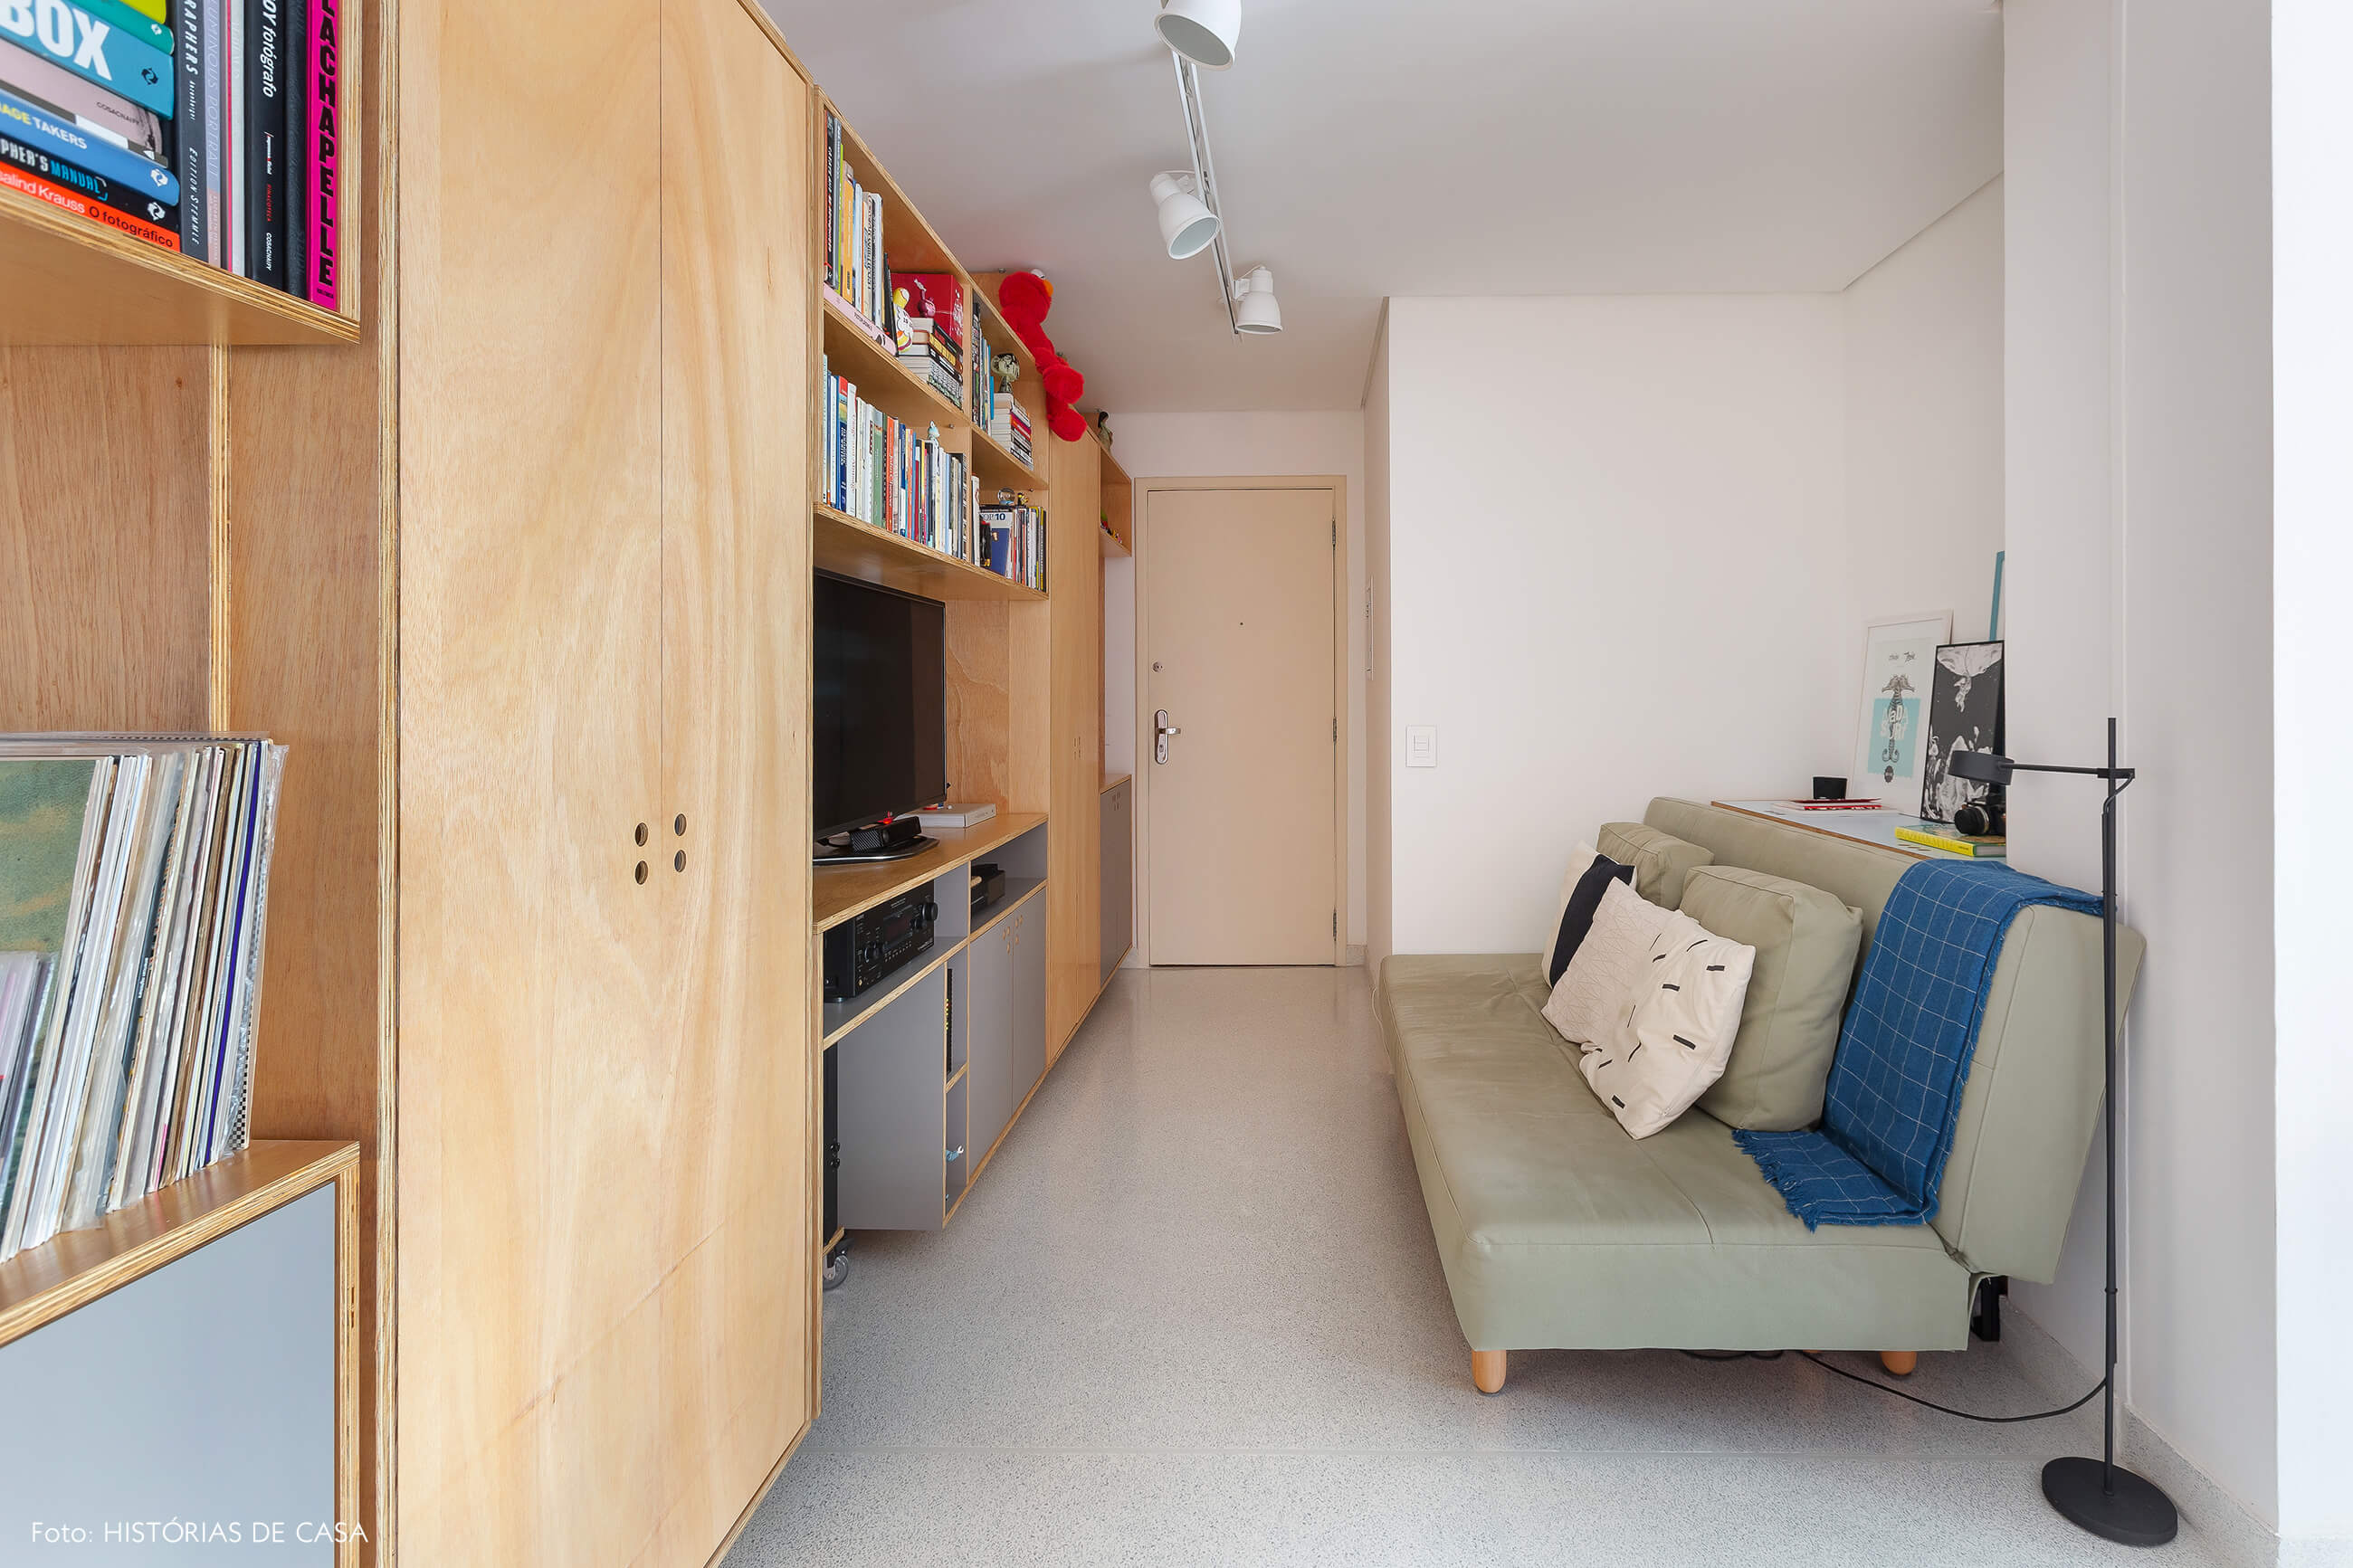 Apartamento pequeno com ambientes integrados e sofá-cama na sala